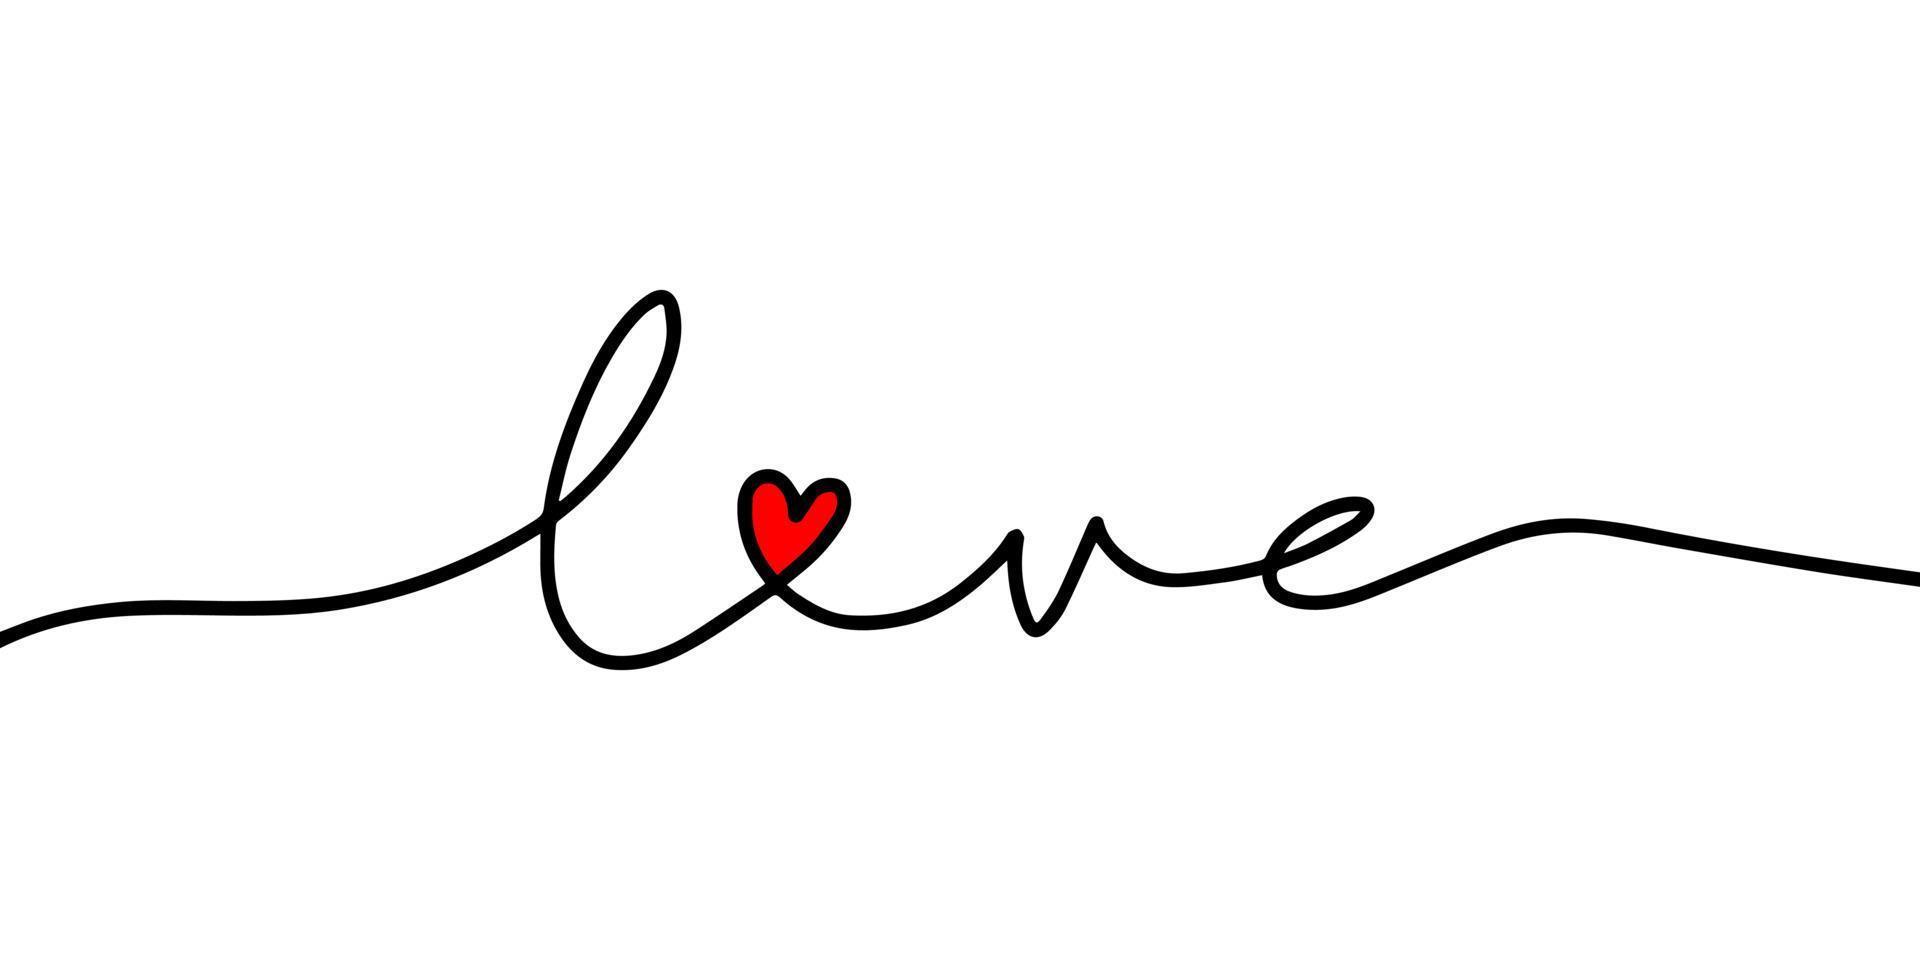 amor corazon. símbolo de amor abstracto. dibujo continuo de una línea de amor tipografía letras línea arte diseño vector ilustración.